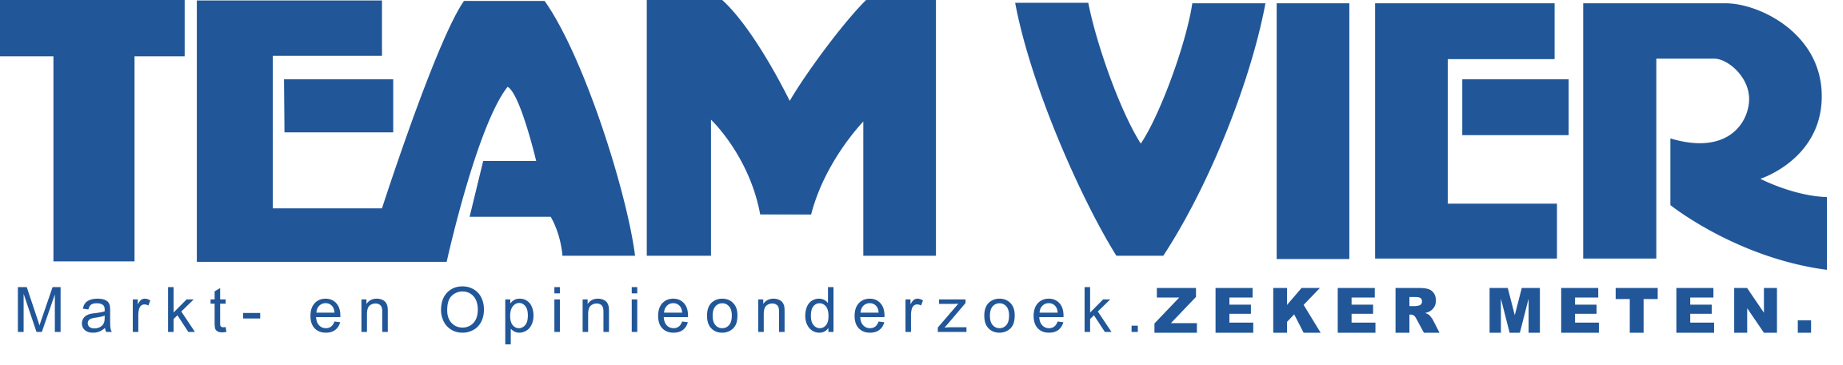 TeamVier logo